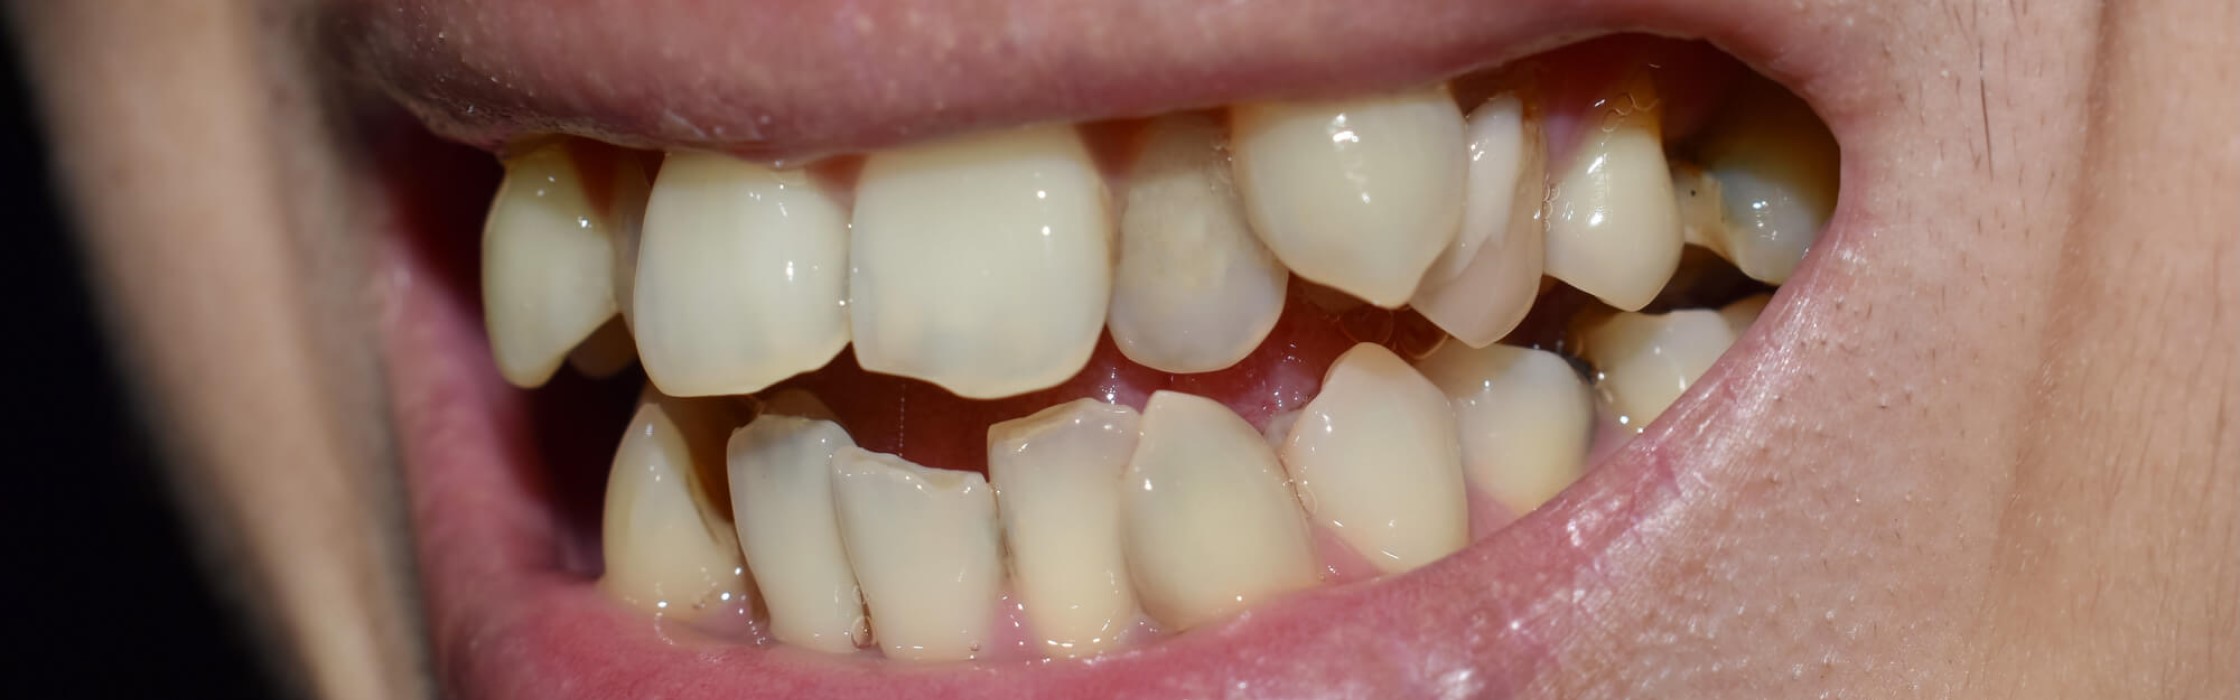 Hyperdontie: Mehr Zähne im Gebiss als vorgesehen